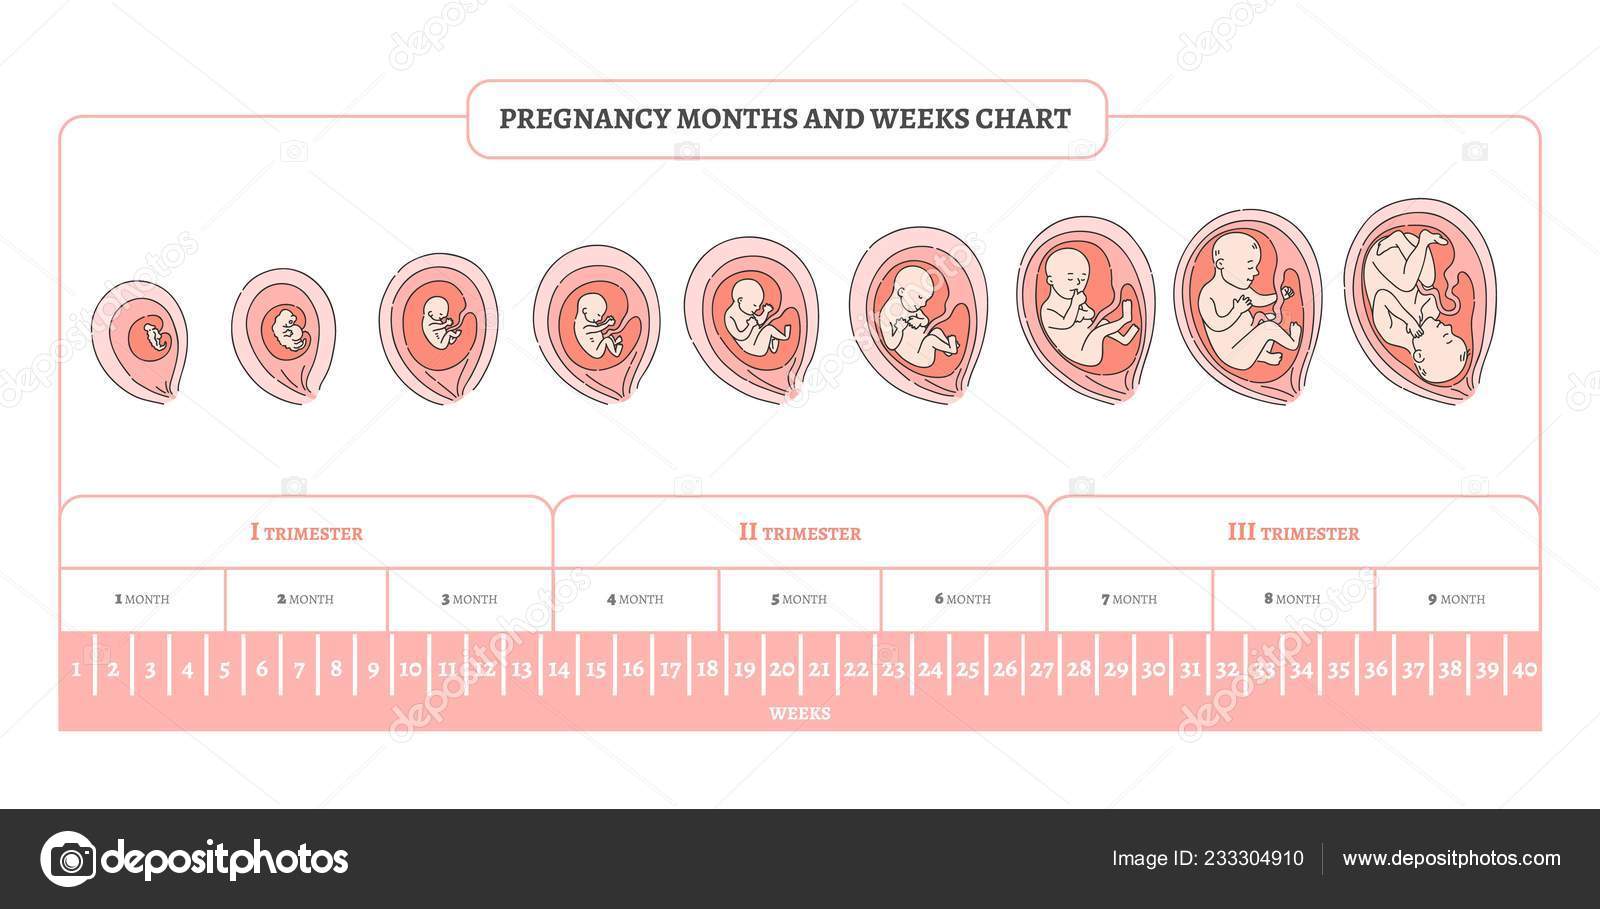 С какой недели беременности начинается третий триместр